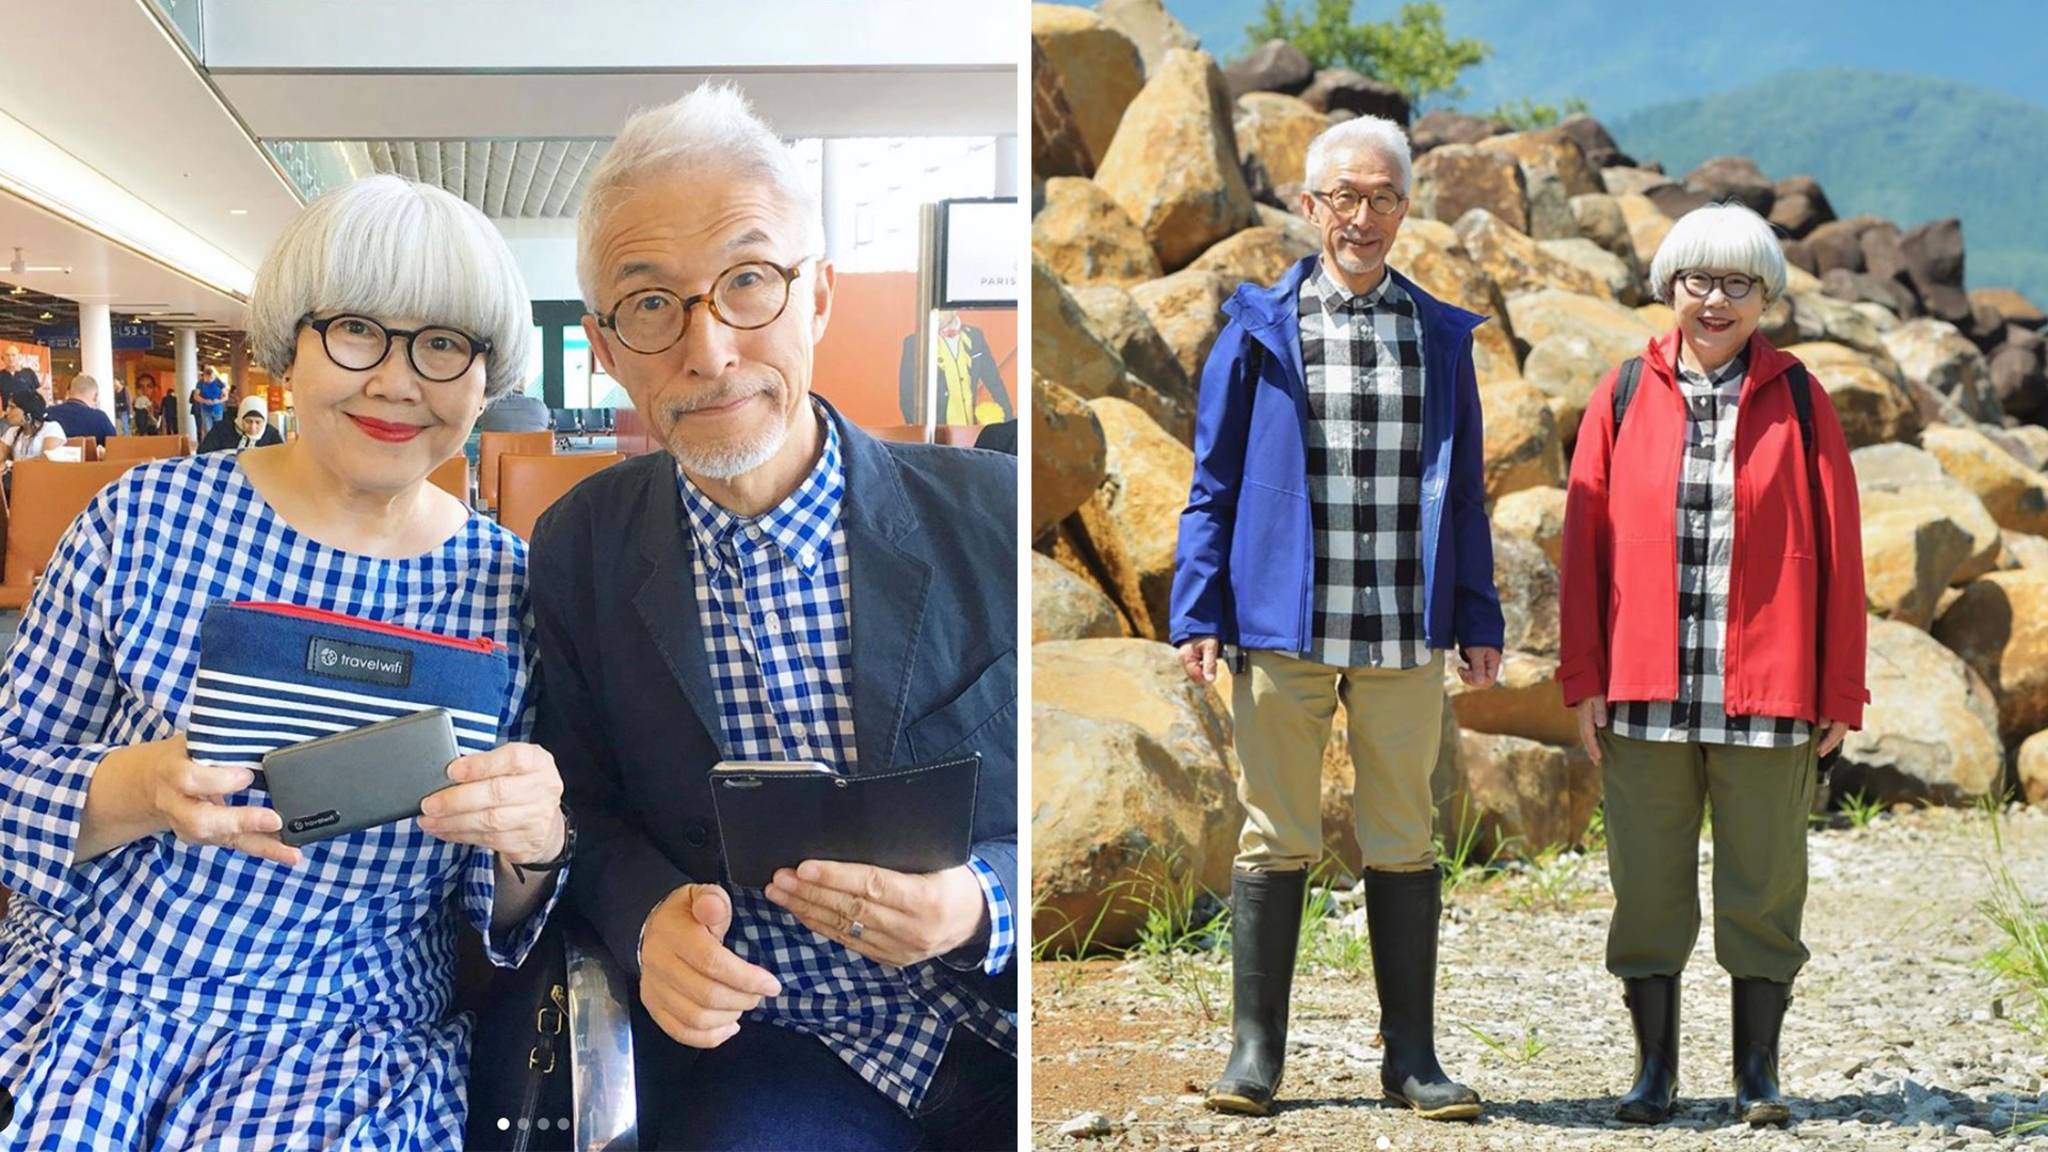 Partnerlook extrem: Japanisches Ehepaar zieht jeden Tag aufeinander abgestimmte Outfits an